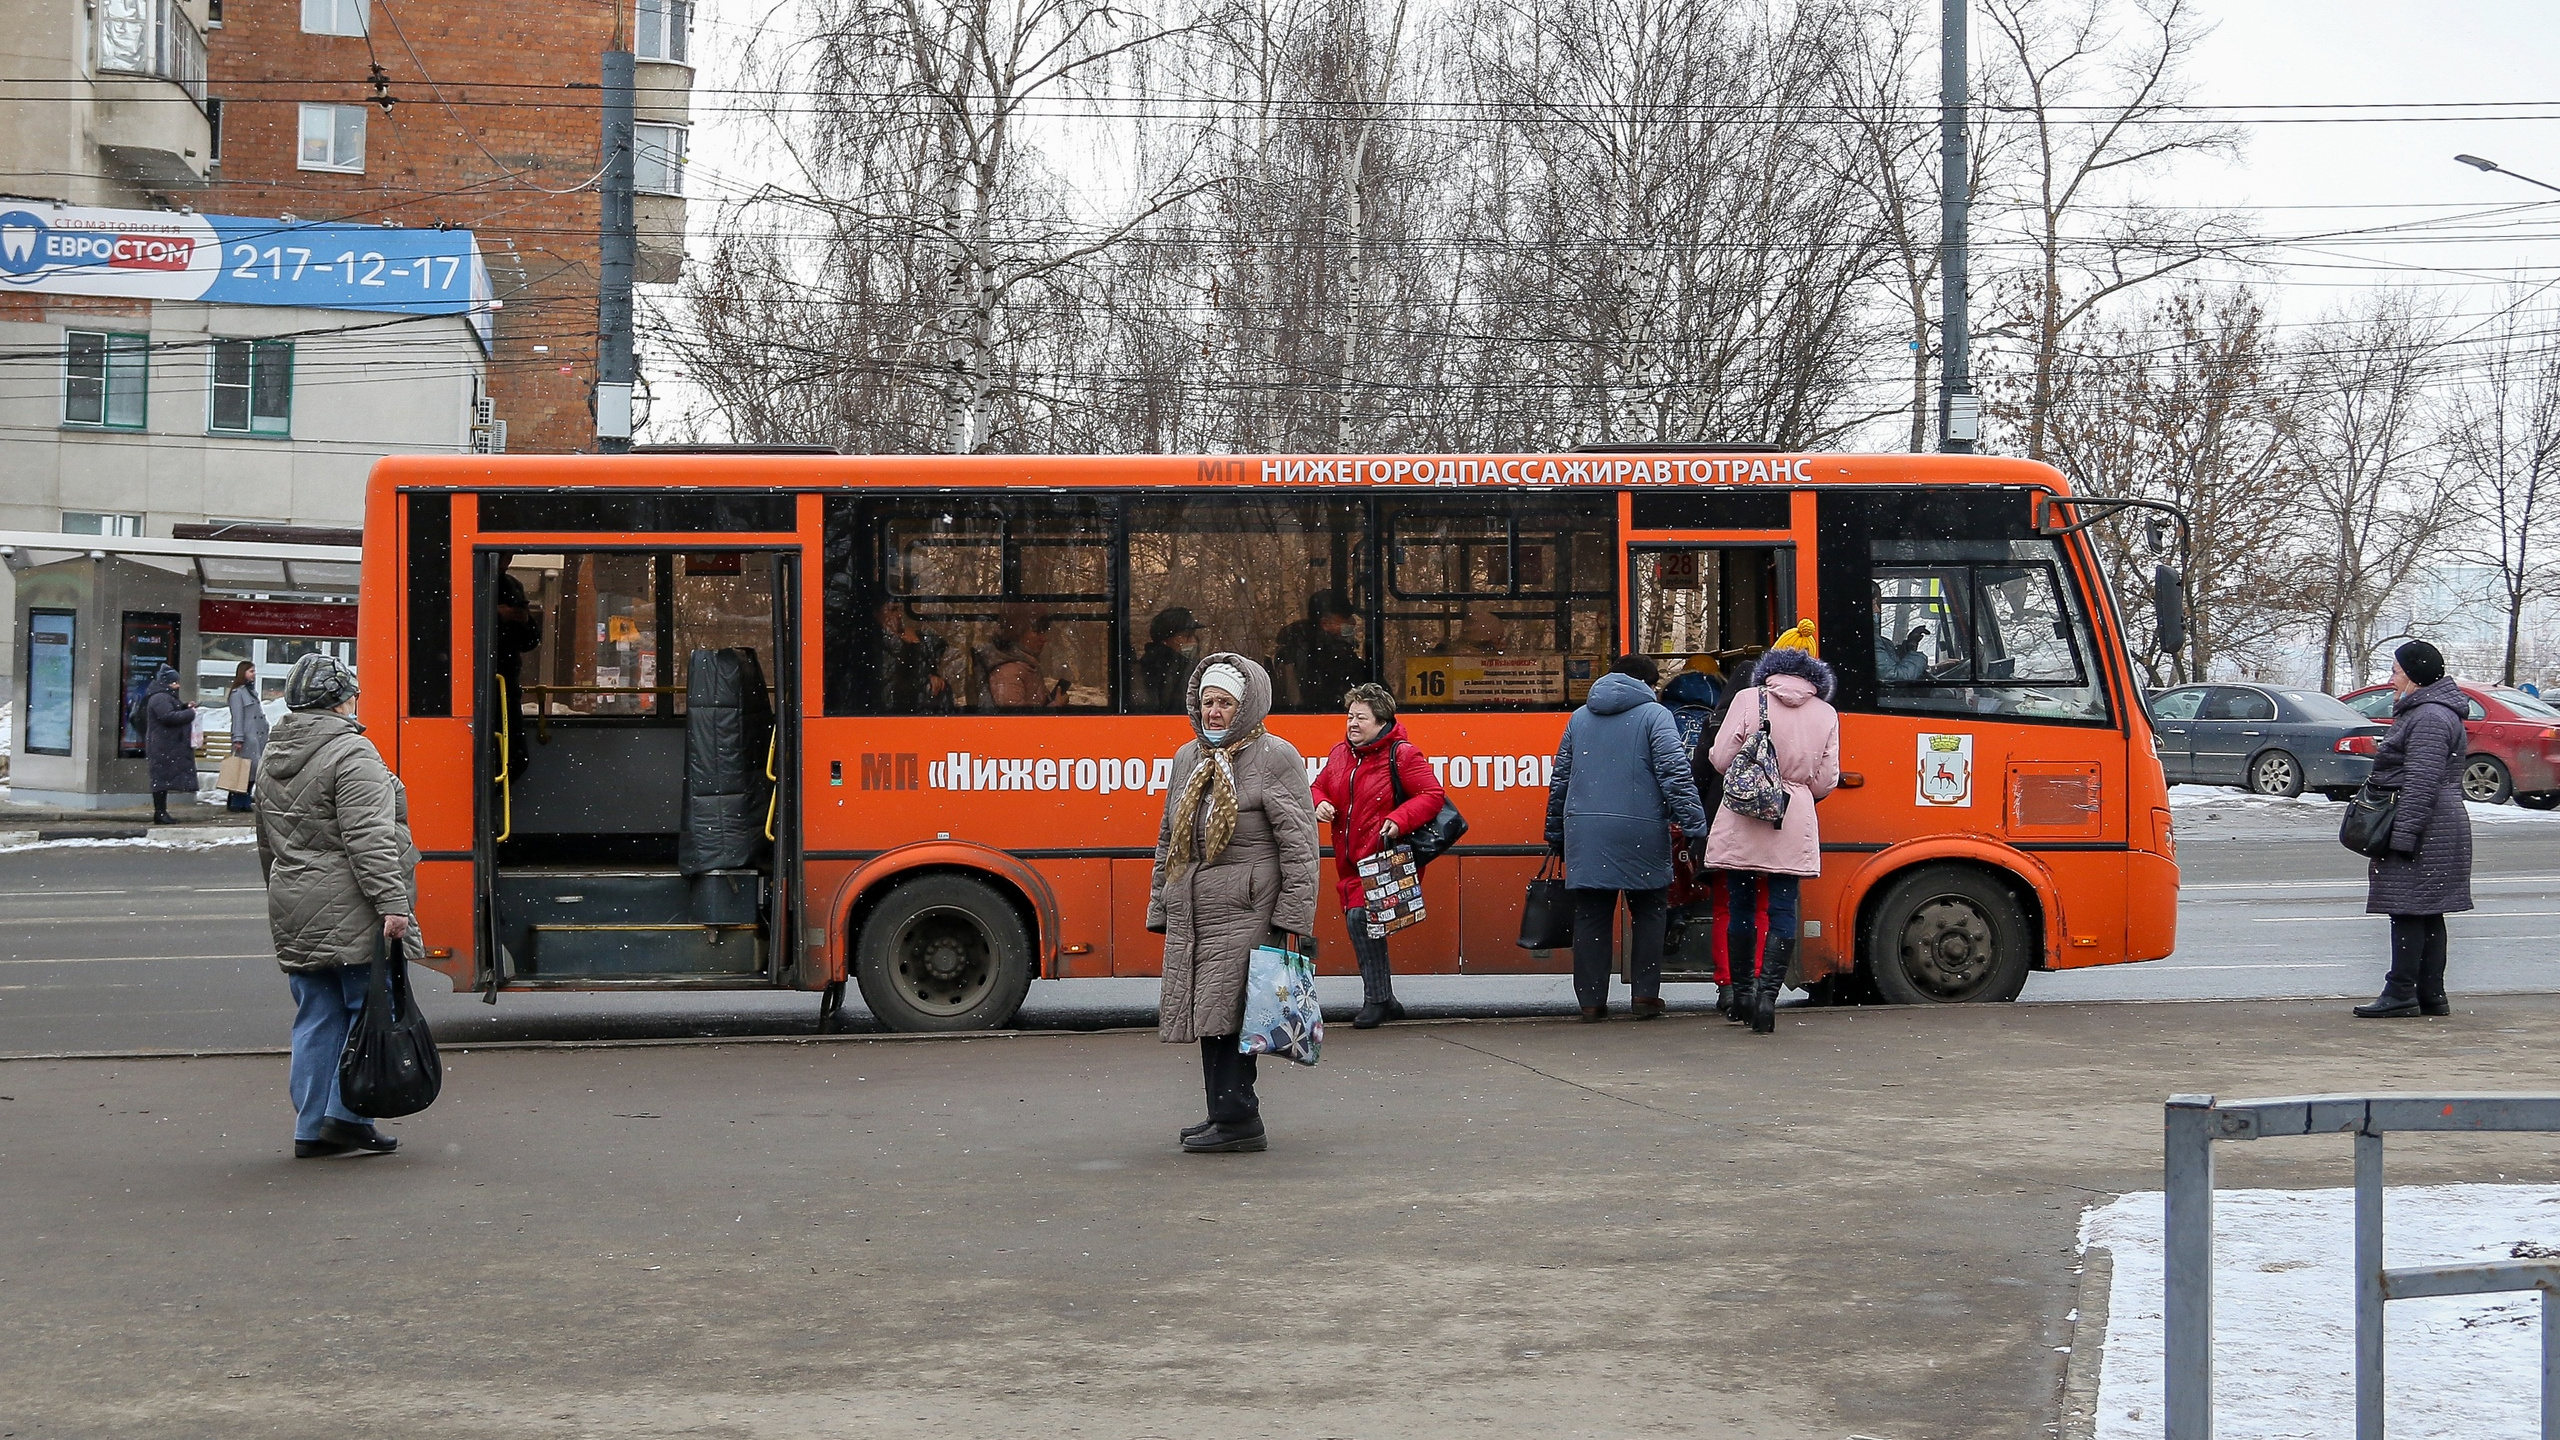 Автобусы нижний новгород изменения. Автобус Нижний Новгород. Маршрутный автобус. Люди в автобусе. Бесплатный общественный транспорт.